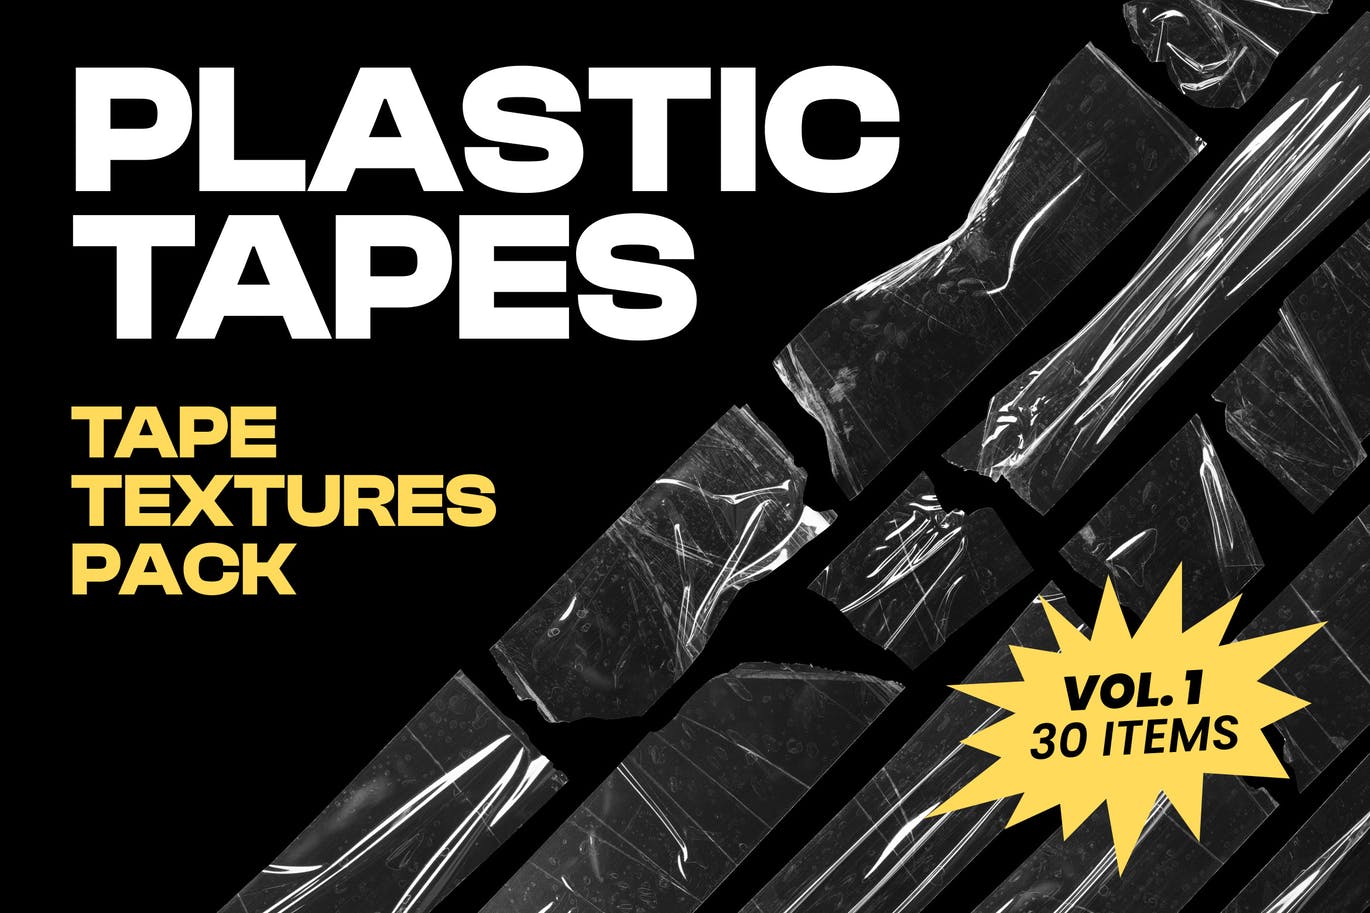 30款潮流褶皱做旧透明胶带贴纸PNG免扣图片设计素材 Plastic Tapes Vol.1 – 30 Textures Pack